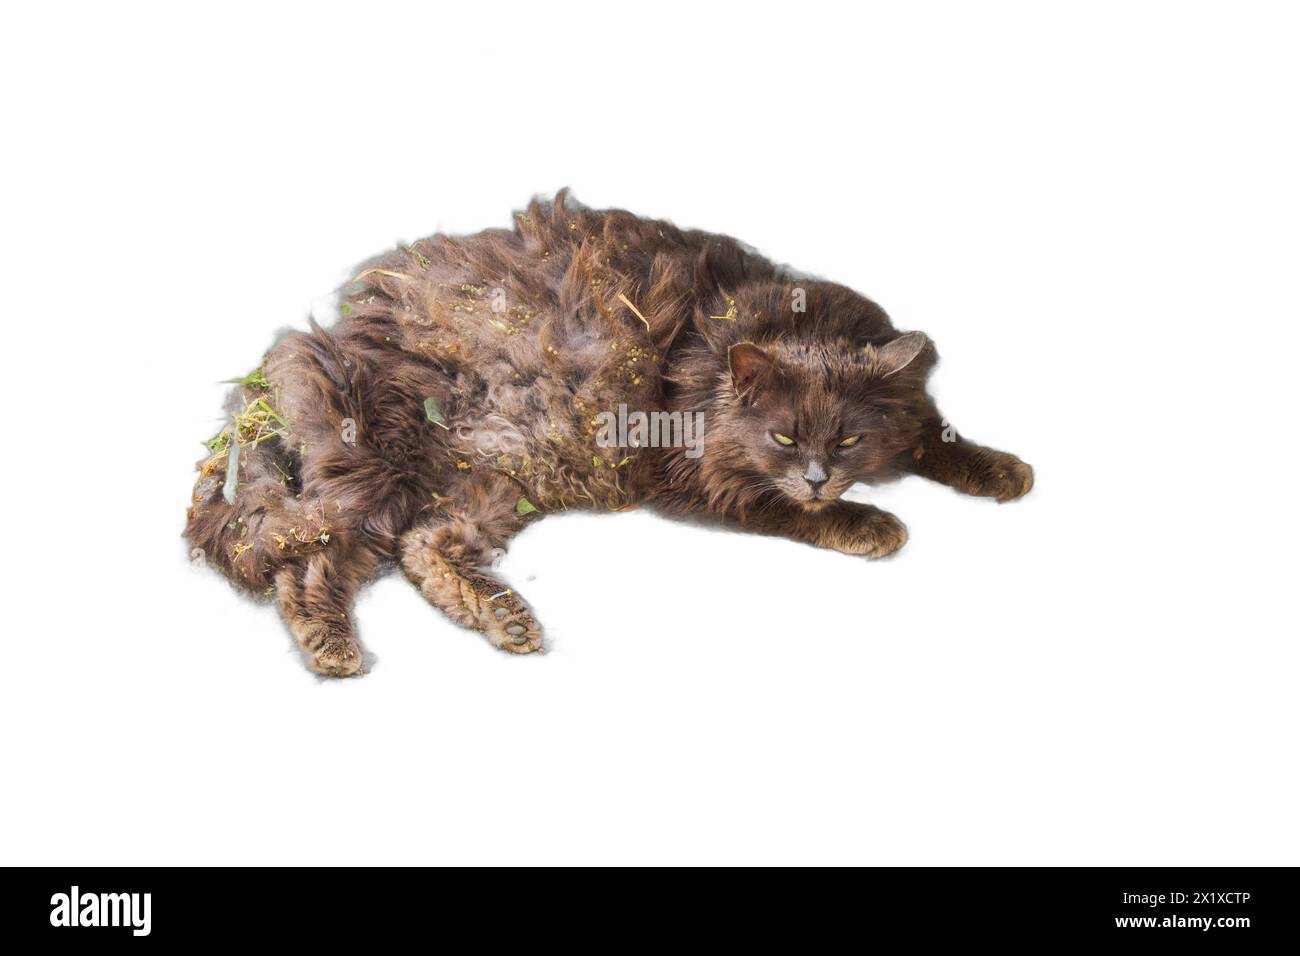 Ein isoliertes Bild einer Katze, die mit Schmutz bedeckt und mit Knoten verfilzt ist. Ideal für Tierrettungskampagnen, Haustierpflegedienste, an Stockfoto